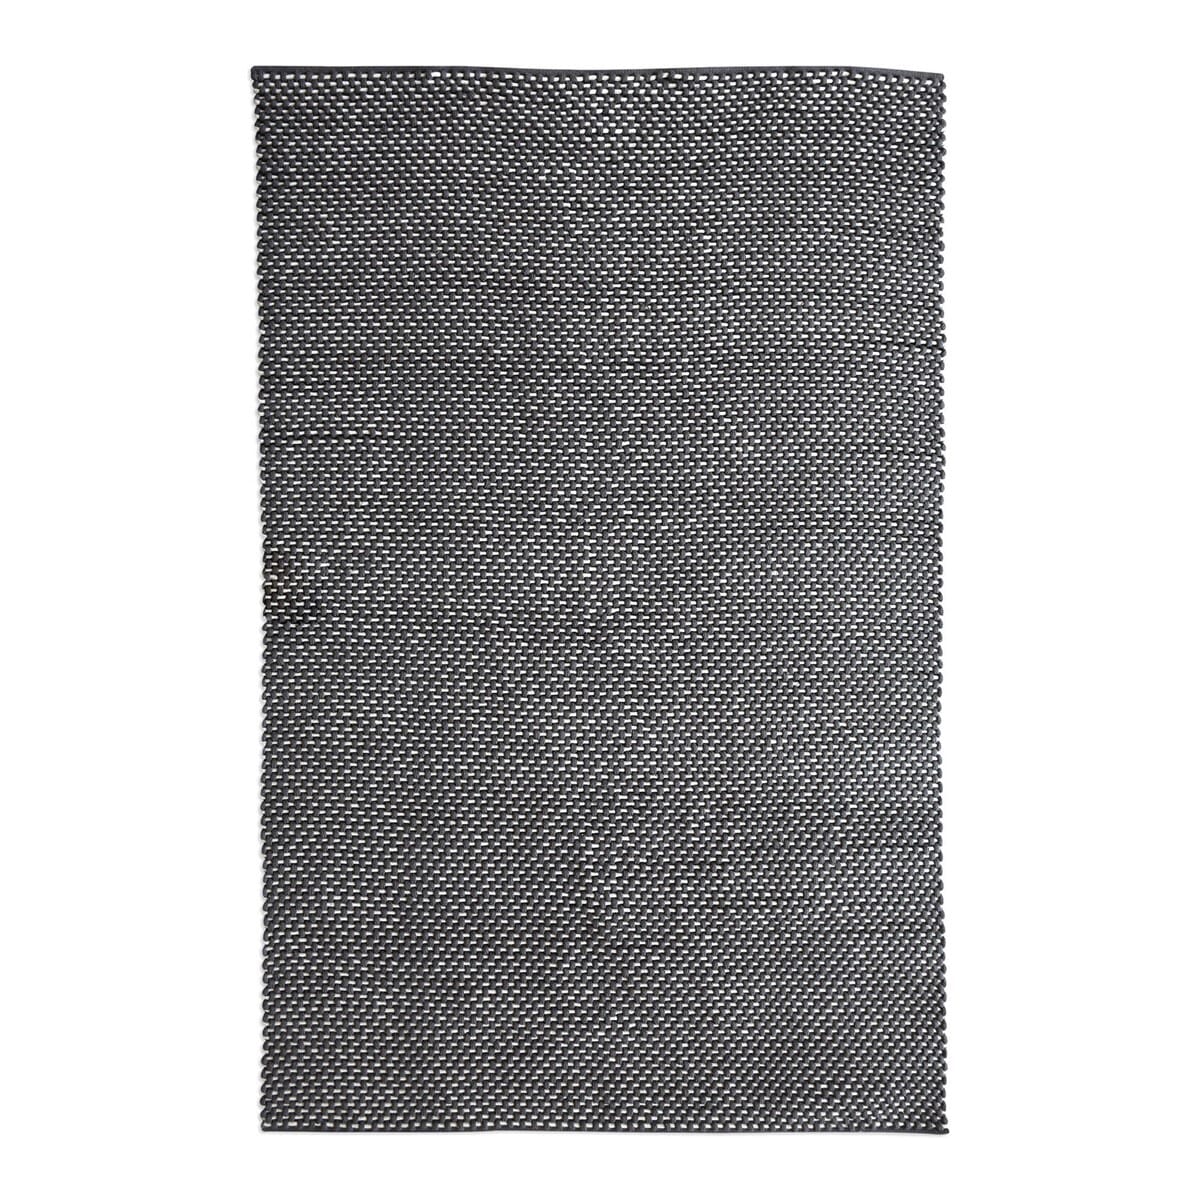 Indoor/Outdoor Rug in Dark Gray/Ivory